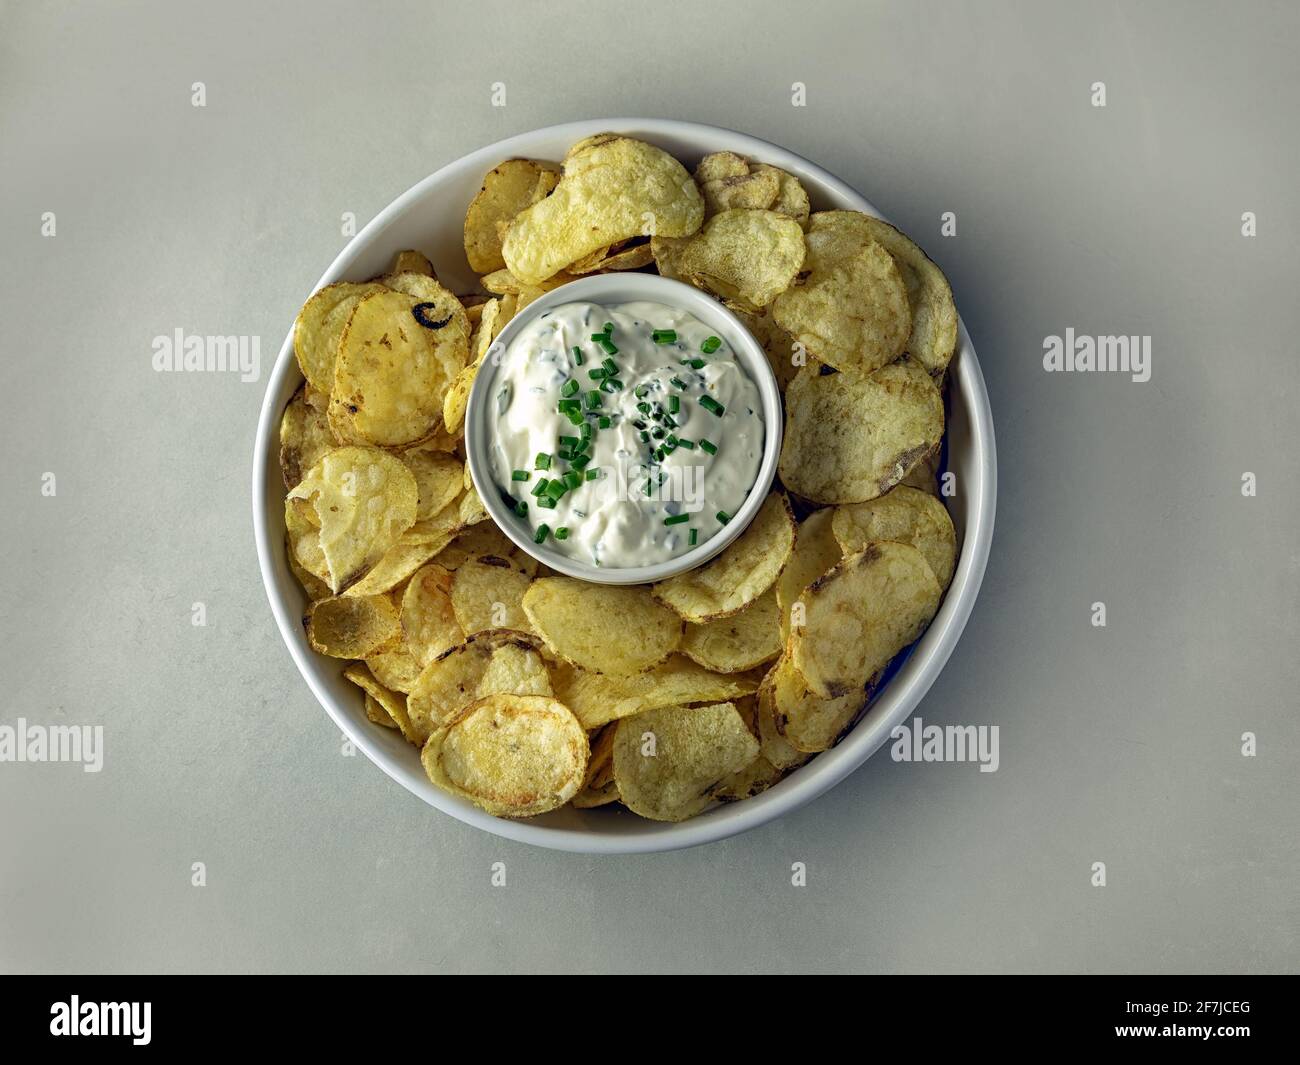 Vue de haut en bas d'un bol de chips de pommes de terre entourant un pot de crème aigre et de sauce à la ciboulette Banque D'Images